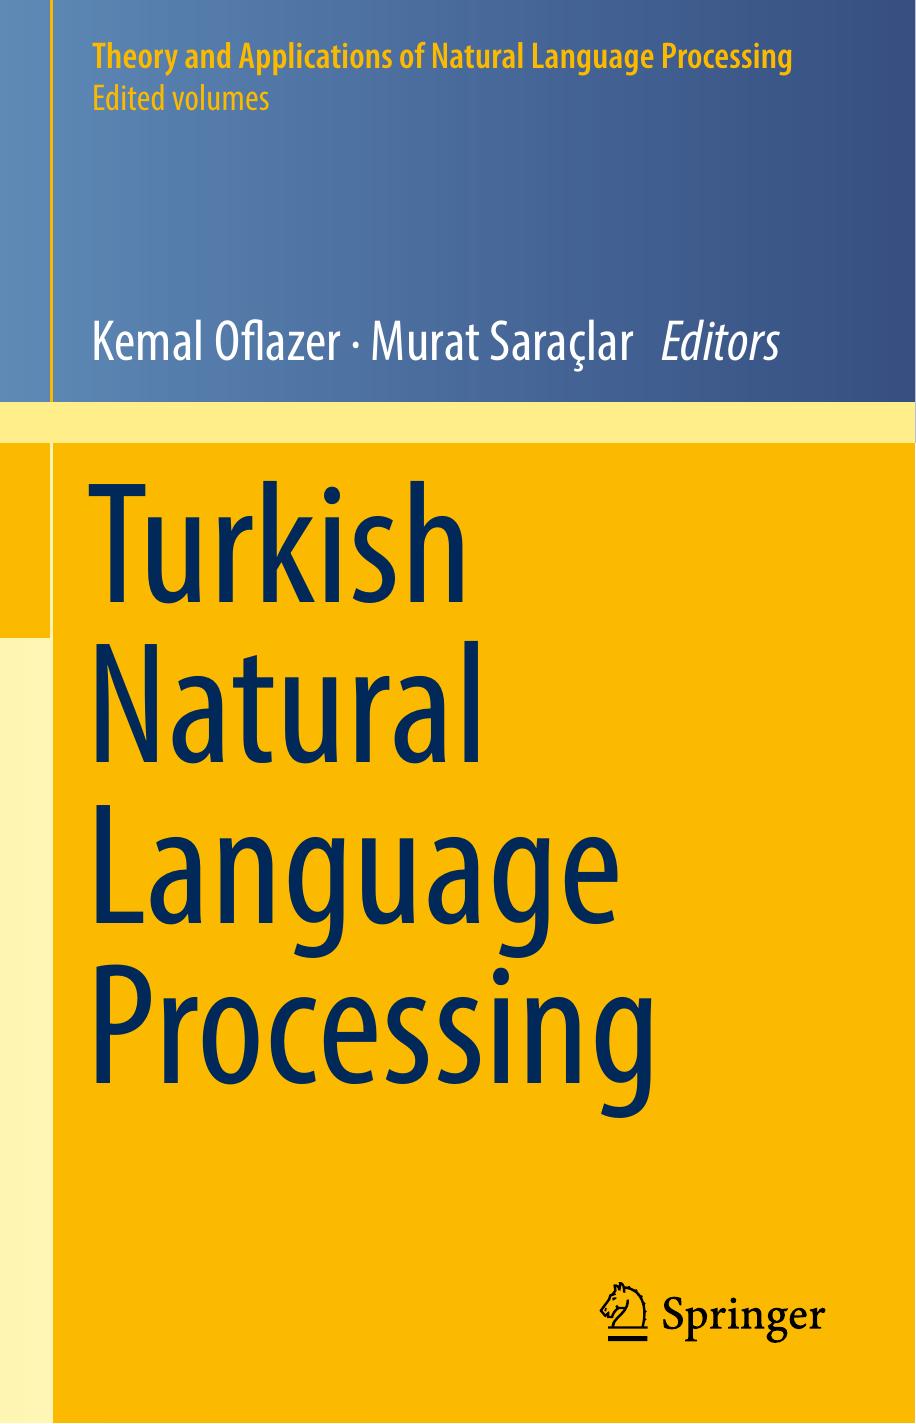 Turkish Natural Language Processing